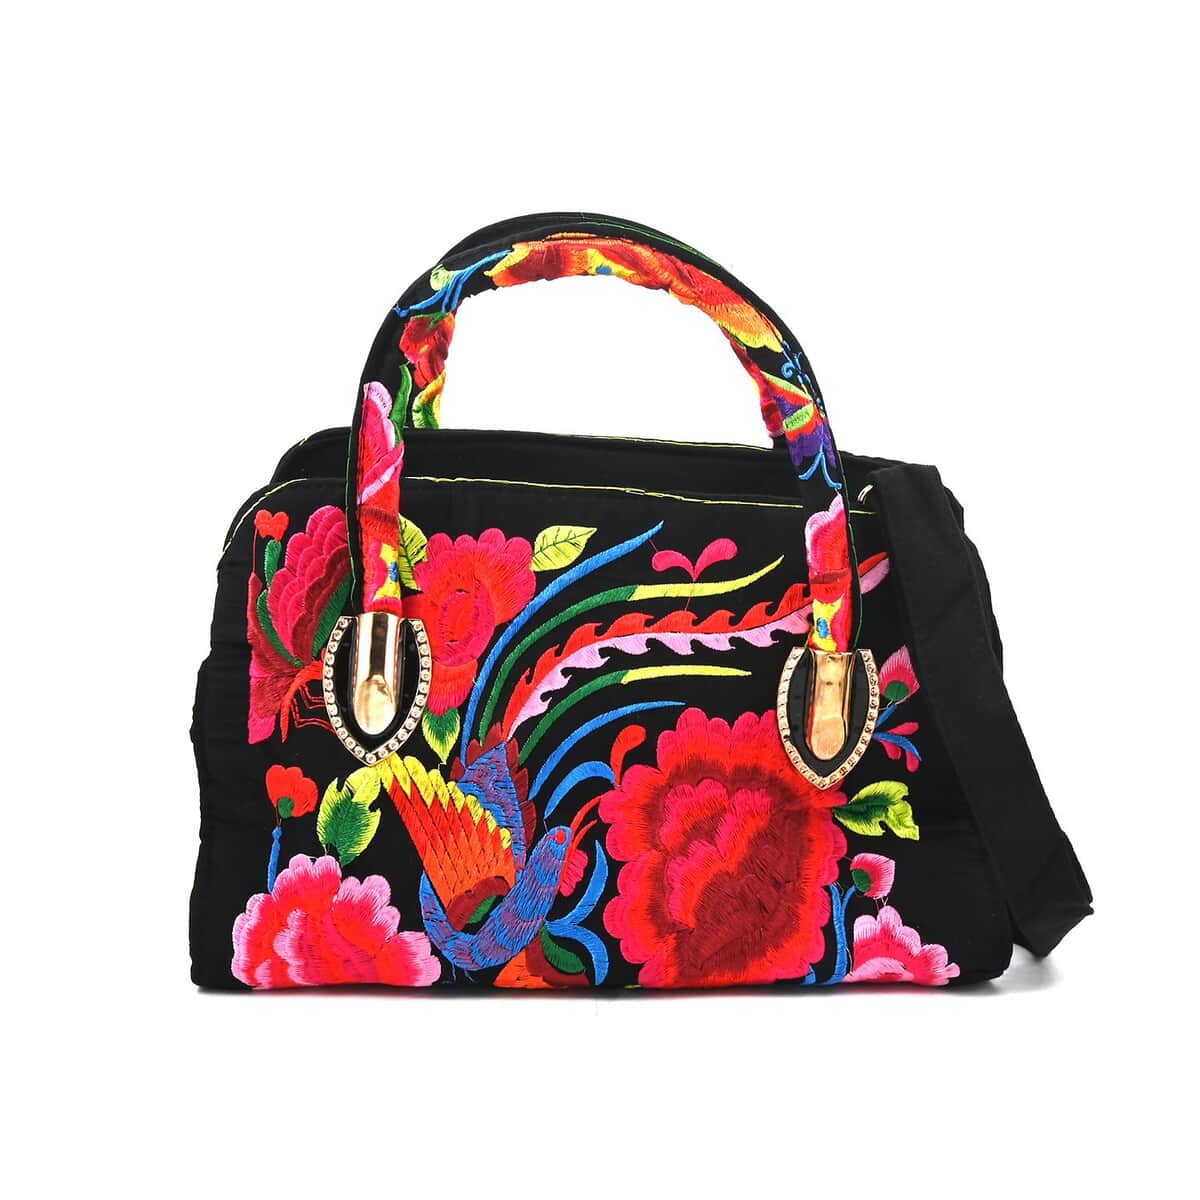 Pink Floral Embroidered Handbag with Shoulder Strap image number 0